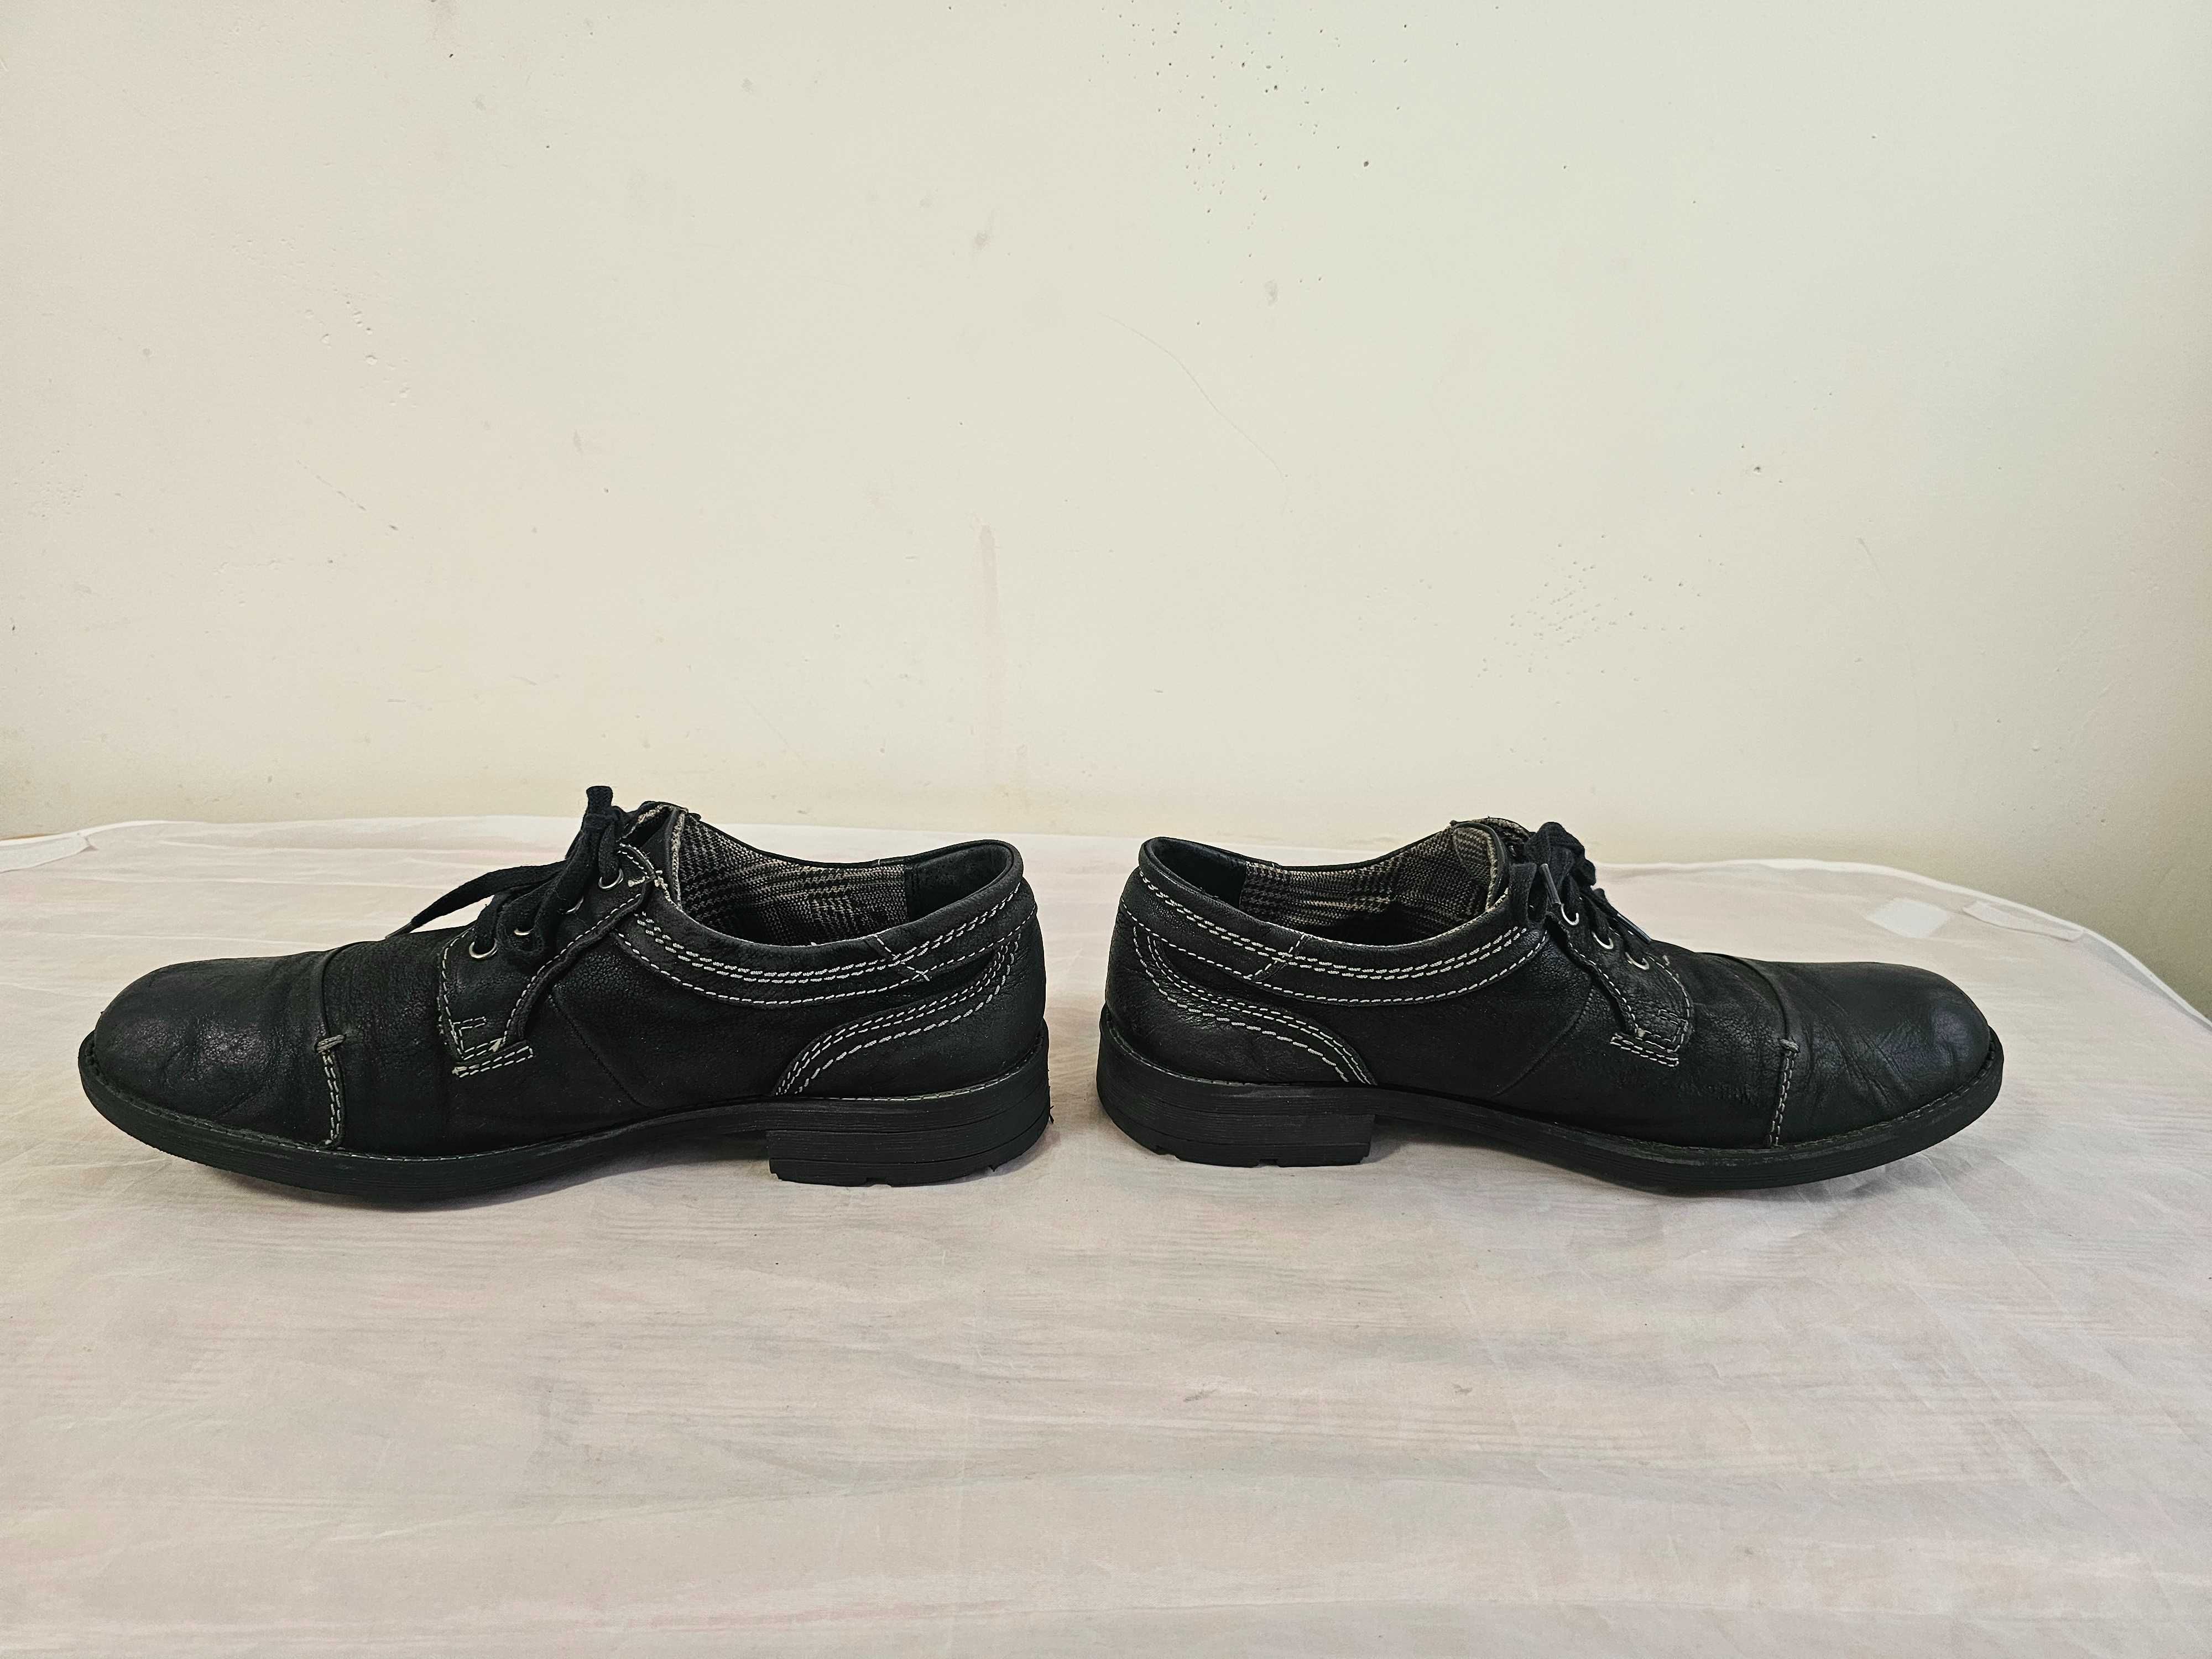 Buty skórzane Lasocki r. 43 , wkładka 28,5 cm